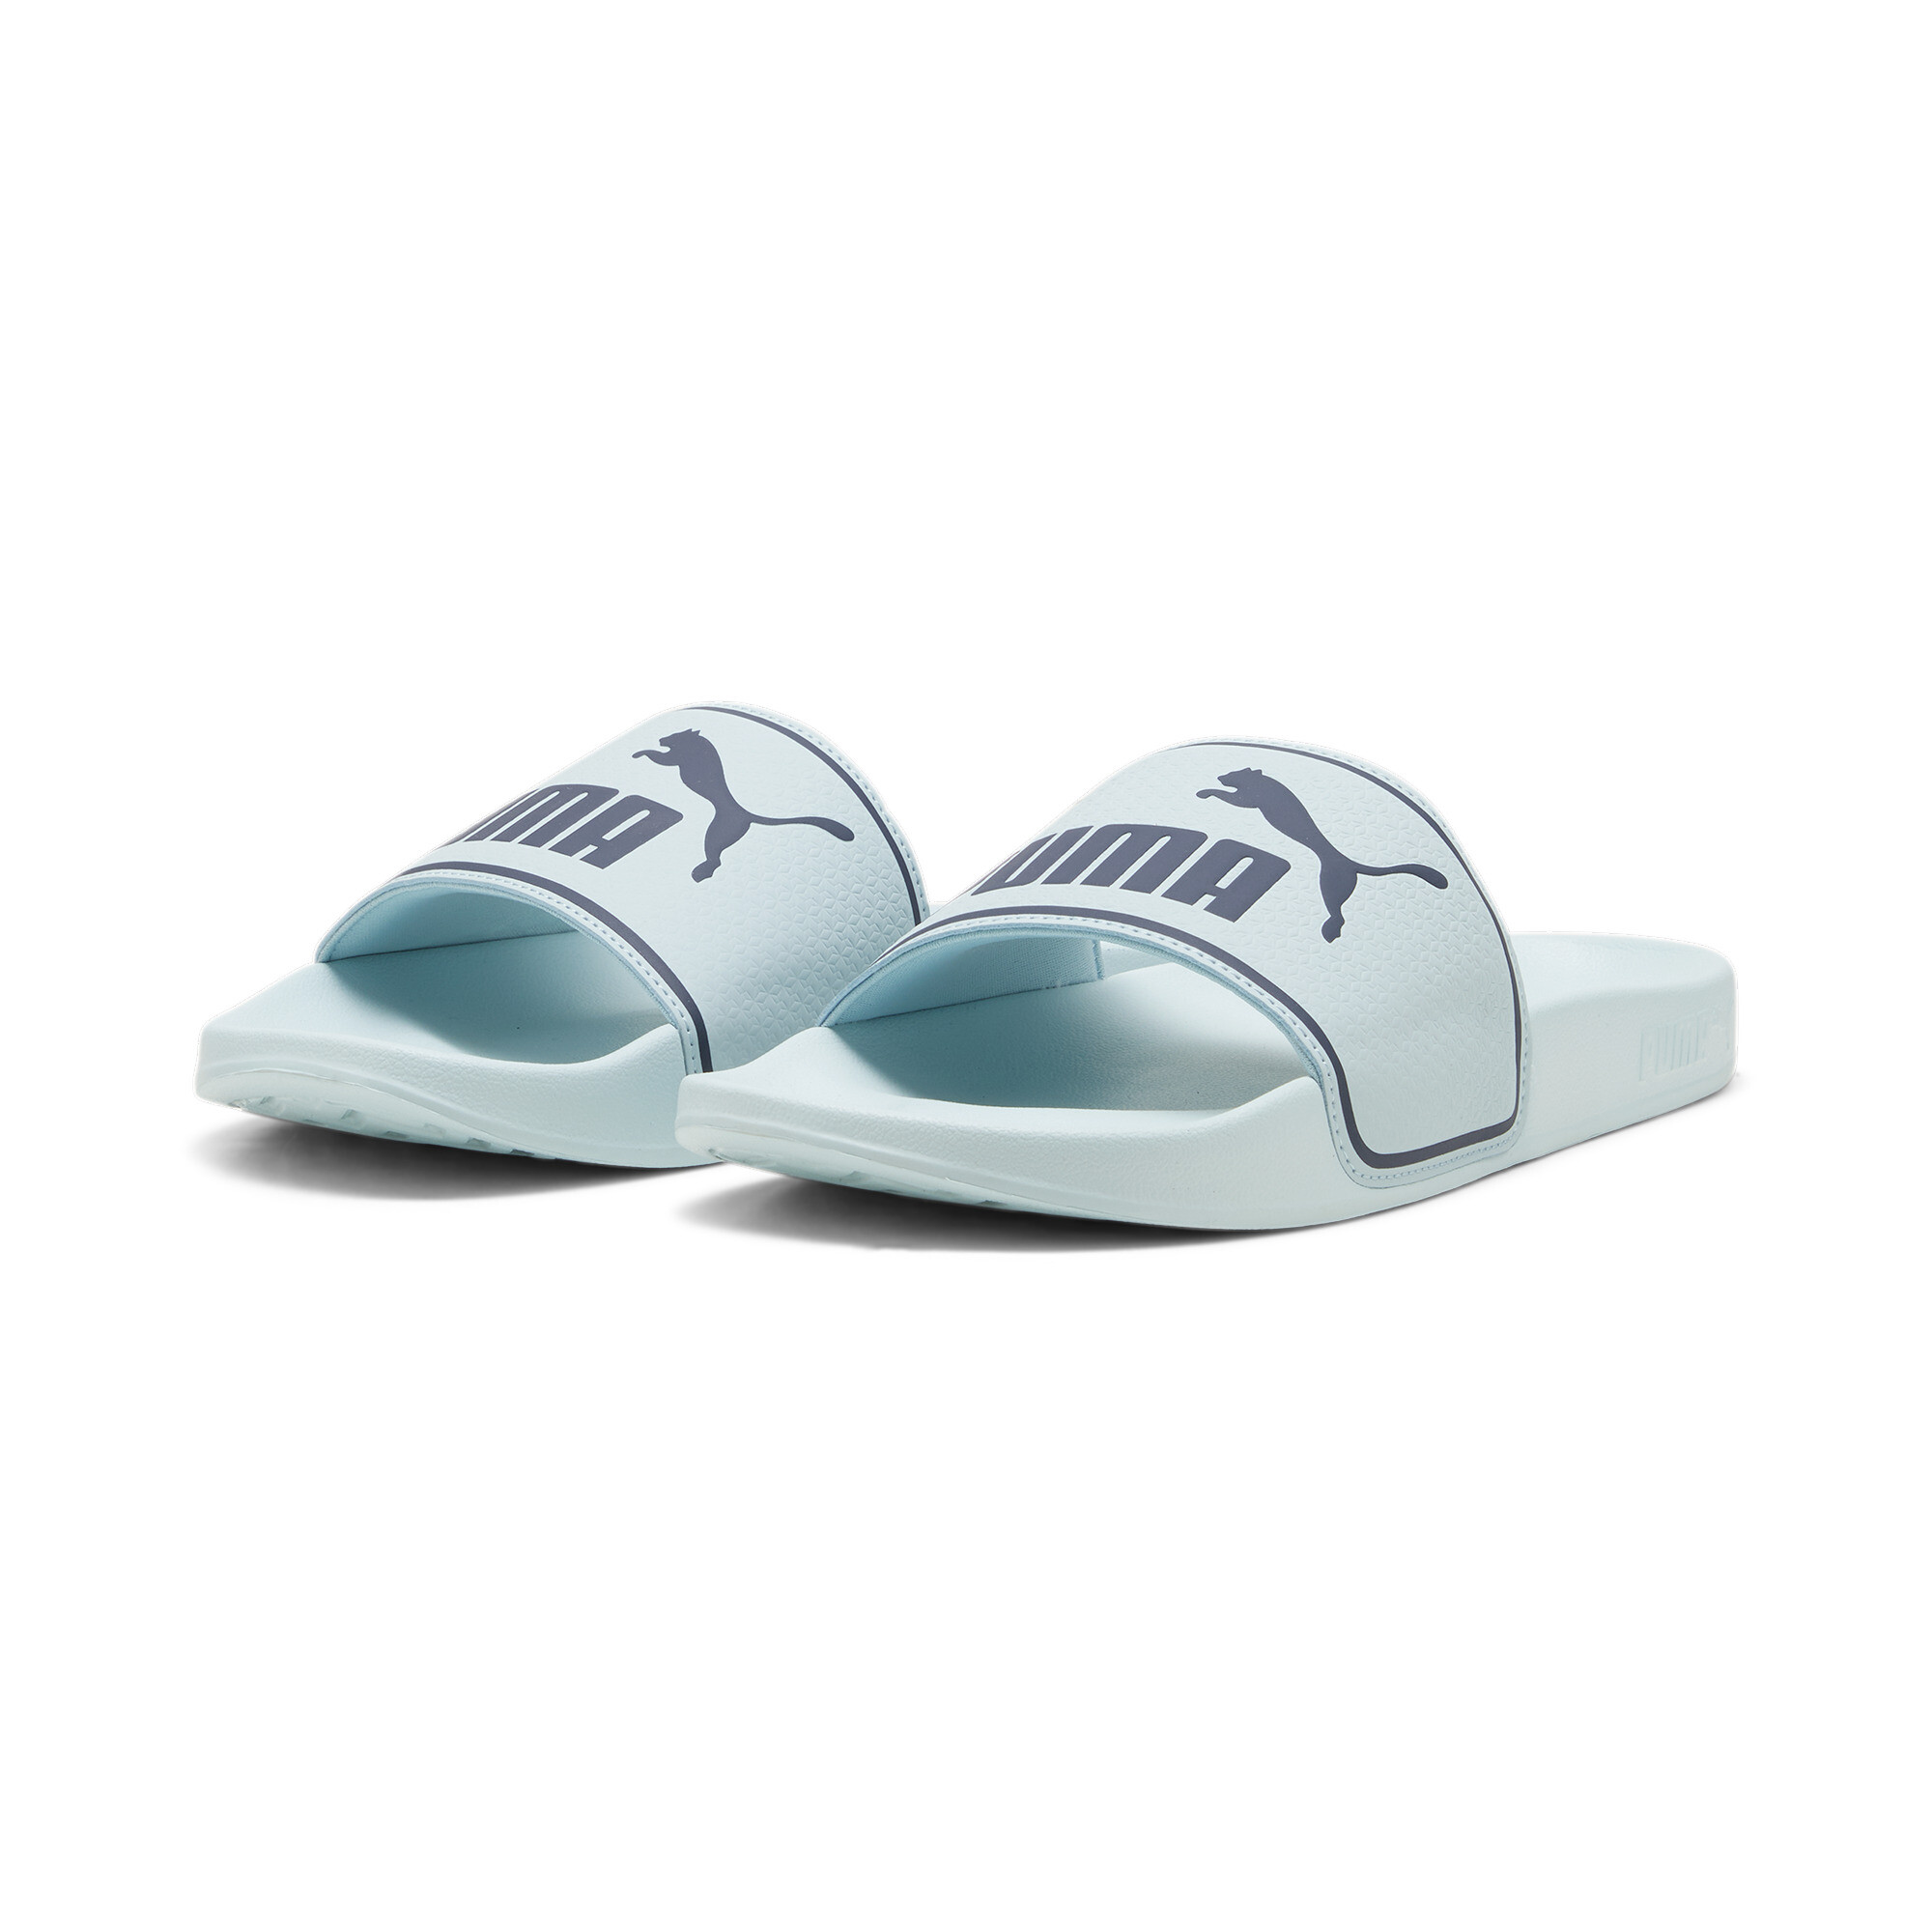 Puma Leadcat 2.0 Sandals, Blue, Size 39, Shoes